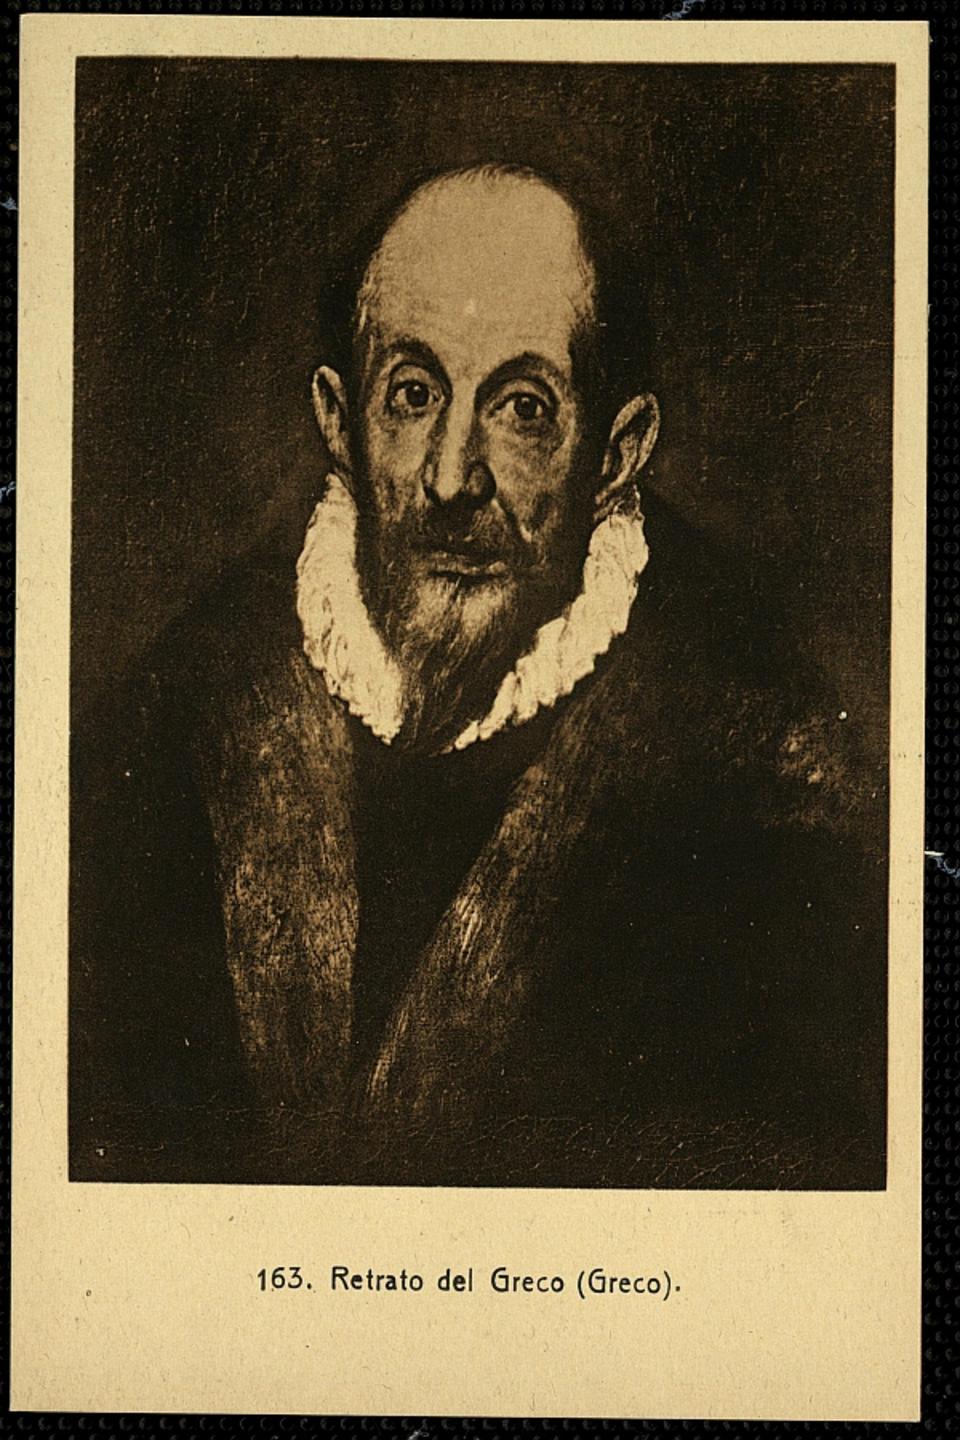 Retrato del Greco (Greco) : / L. Roisin.-. [Imagen]